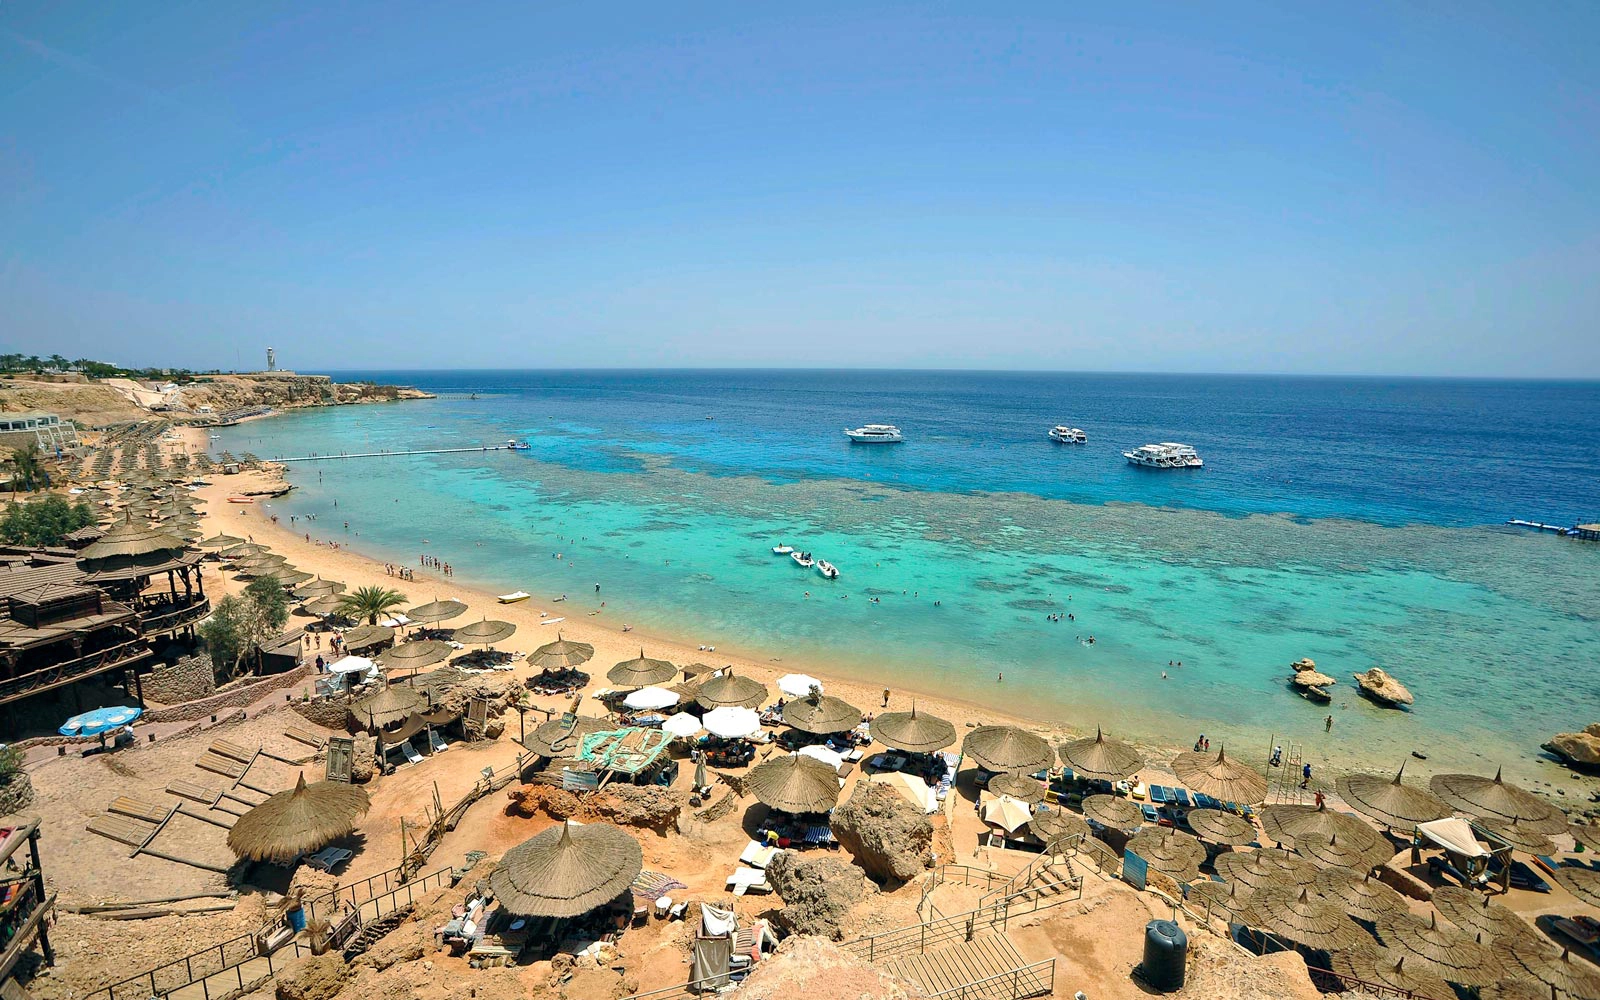  Naama Bay  strand - Egypt